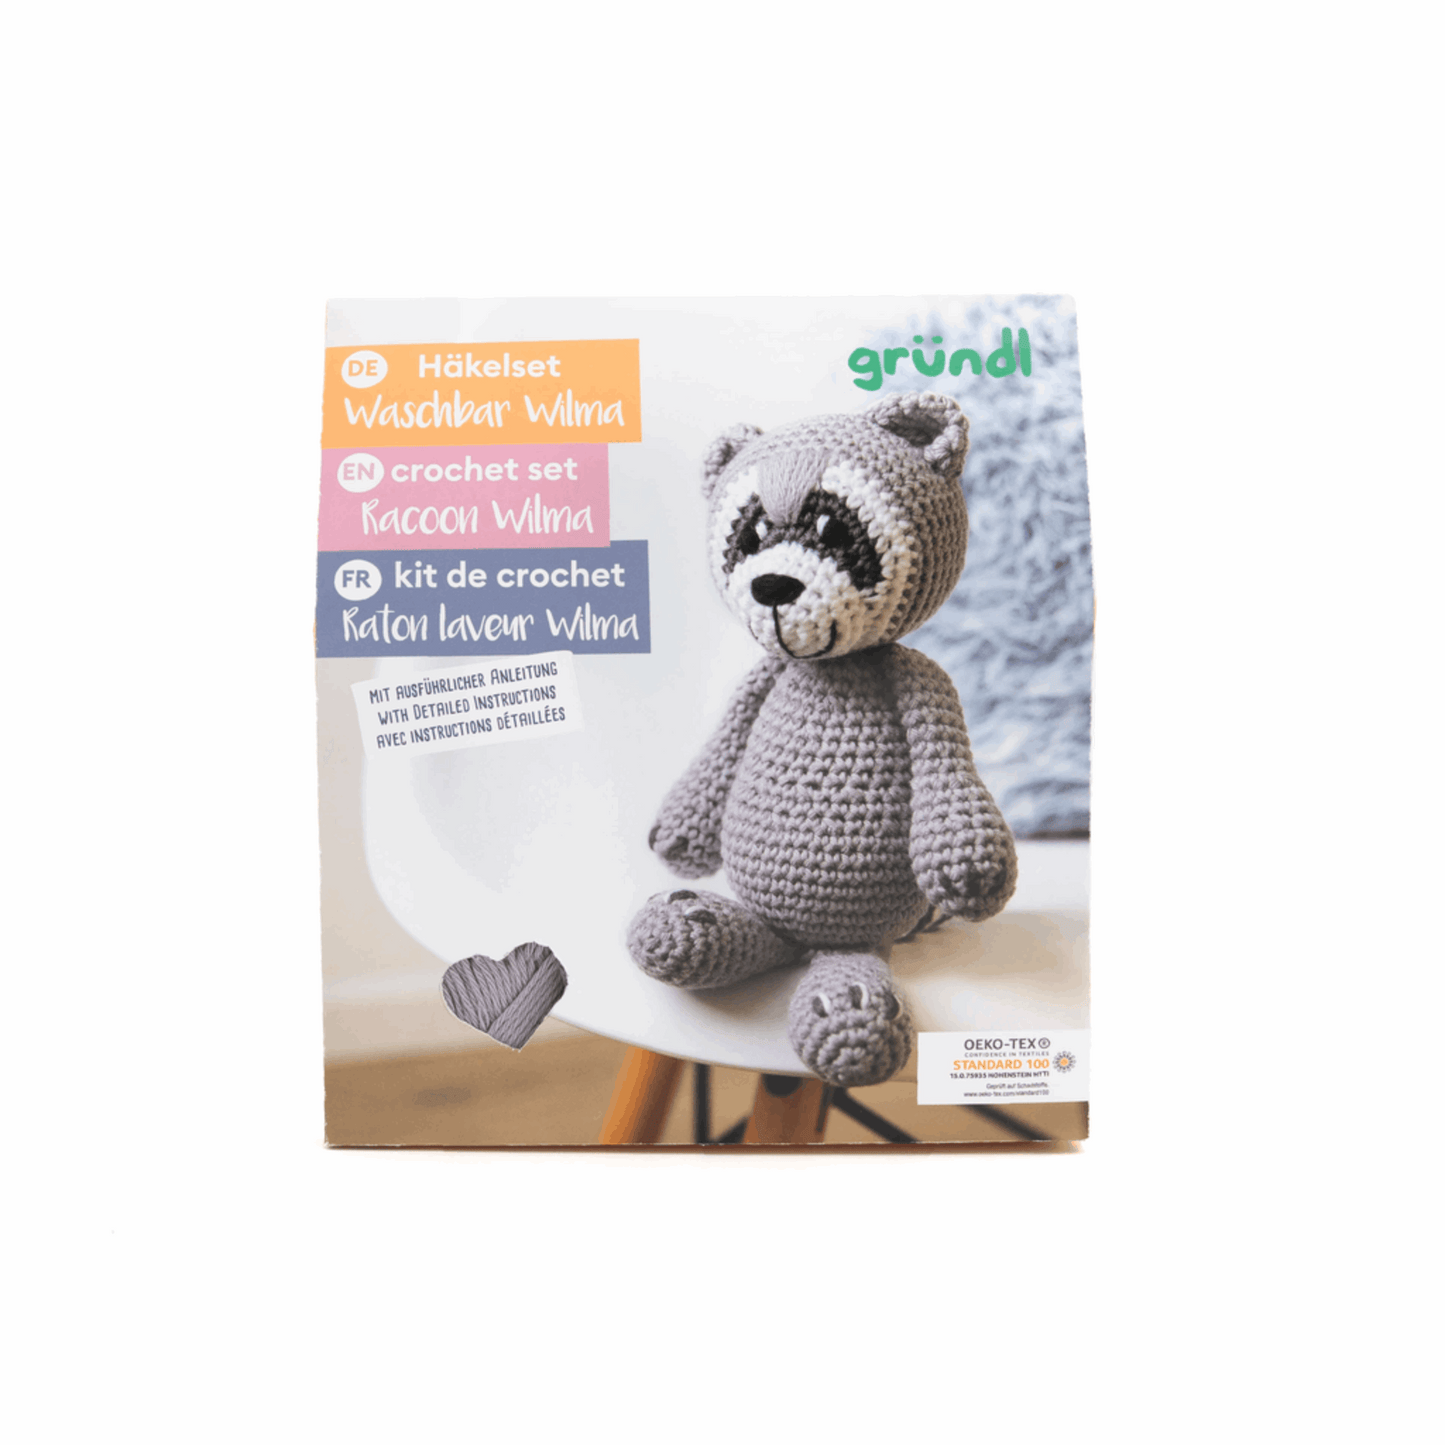 Gründl crochet animal box, raccoon Wilma 1